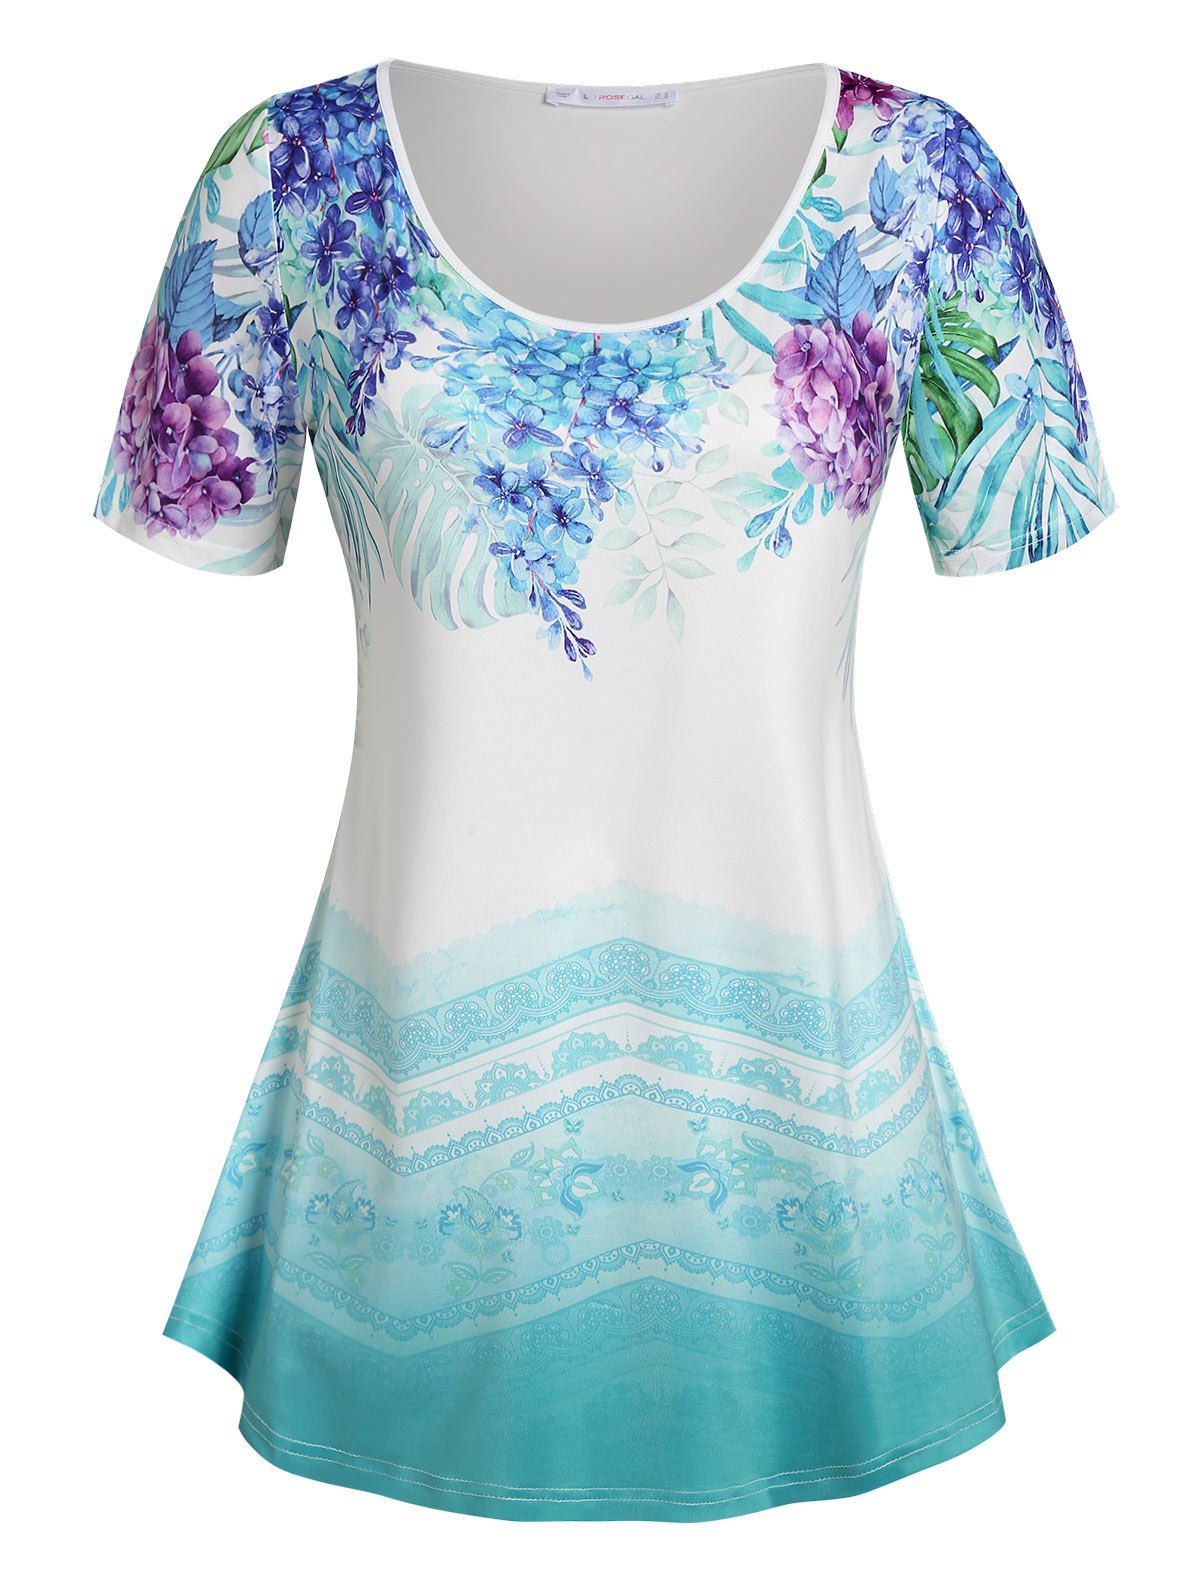 T-shirt Ombre à Imprimé Floral Grande Taille - Bleu clair 3X